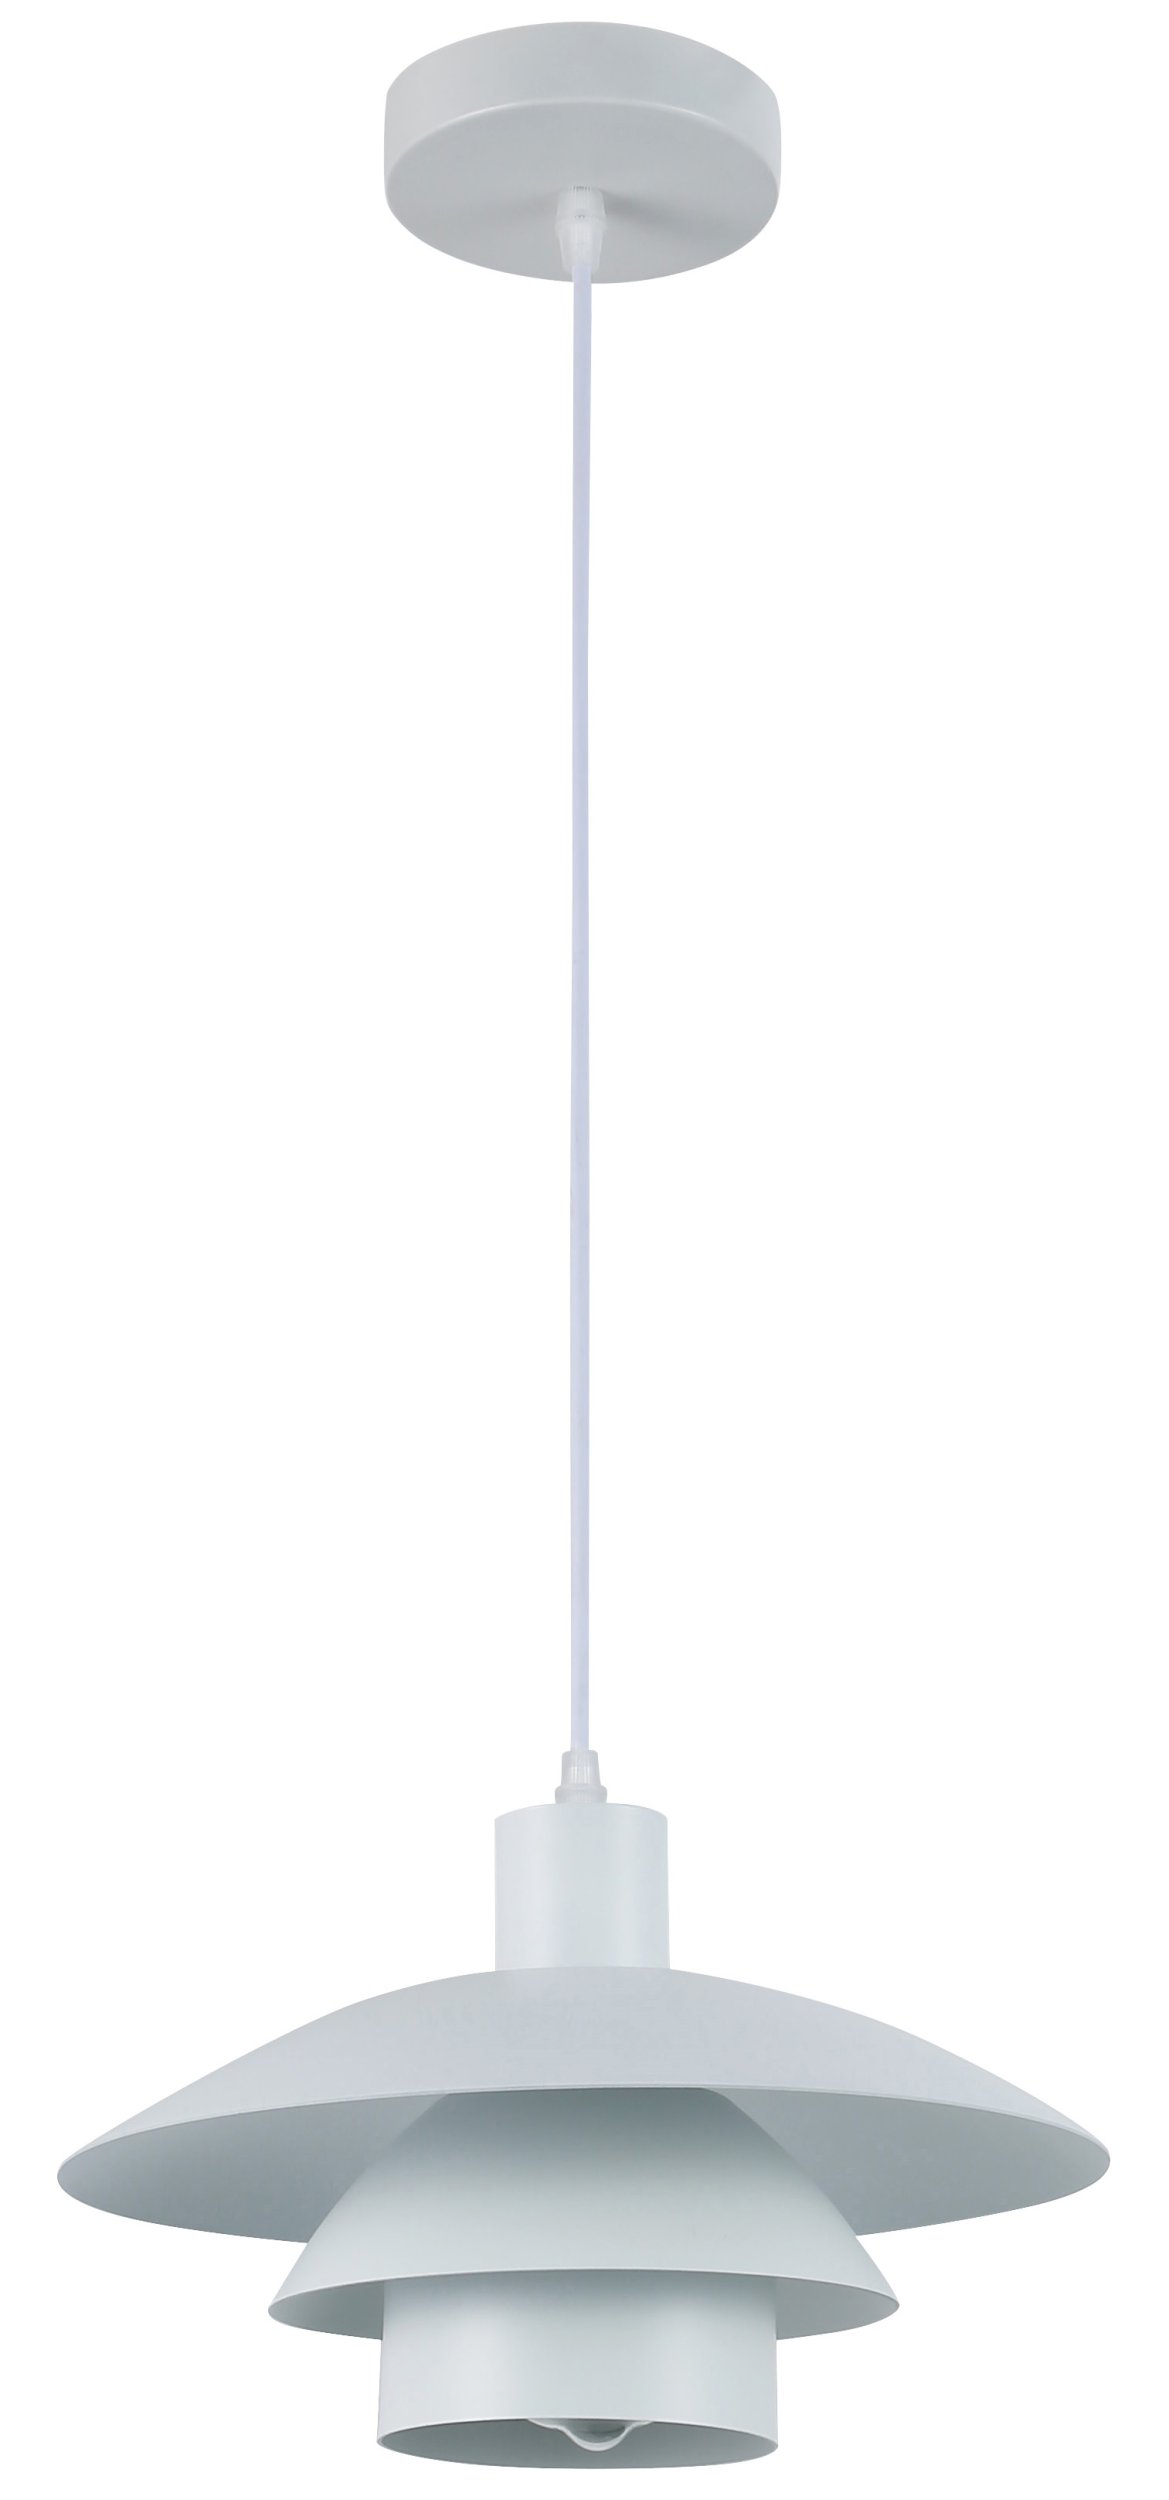 Подвесной светильник Rivoli XENOBIA 5097-201, цвет белый 5097-201 Б0054867 - фото 2